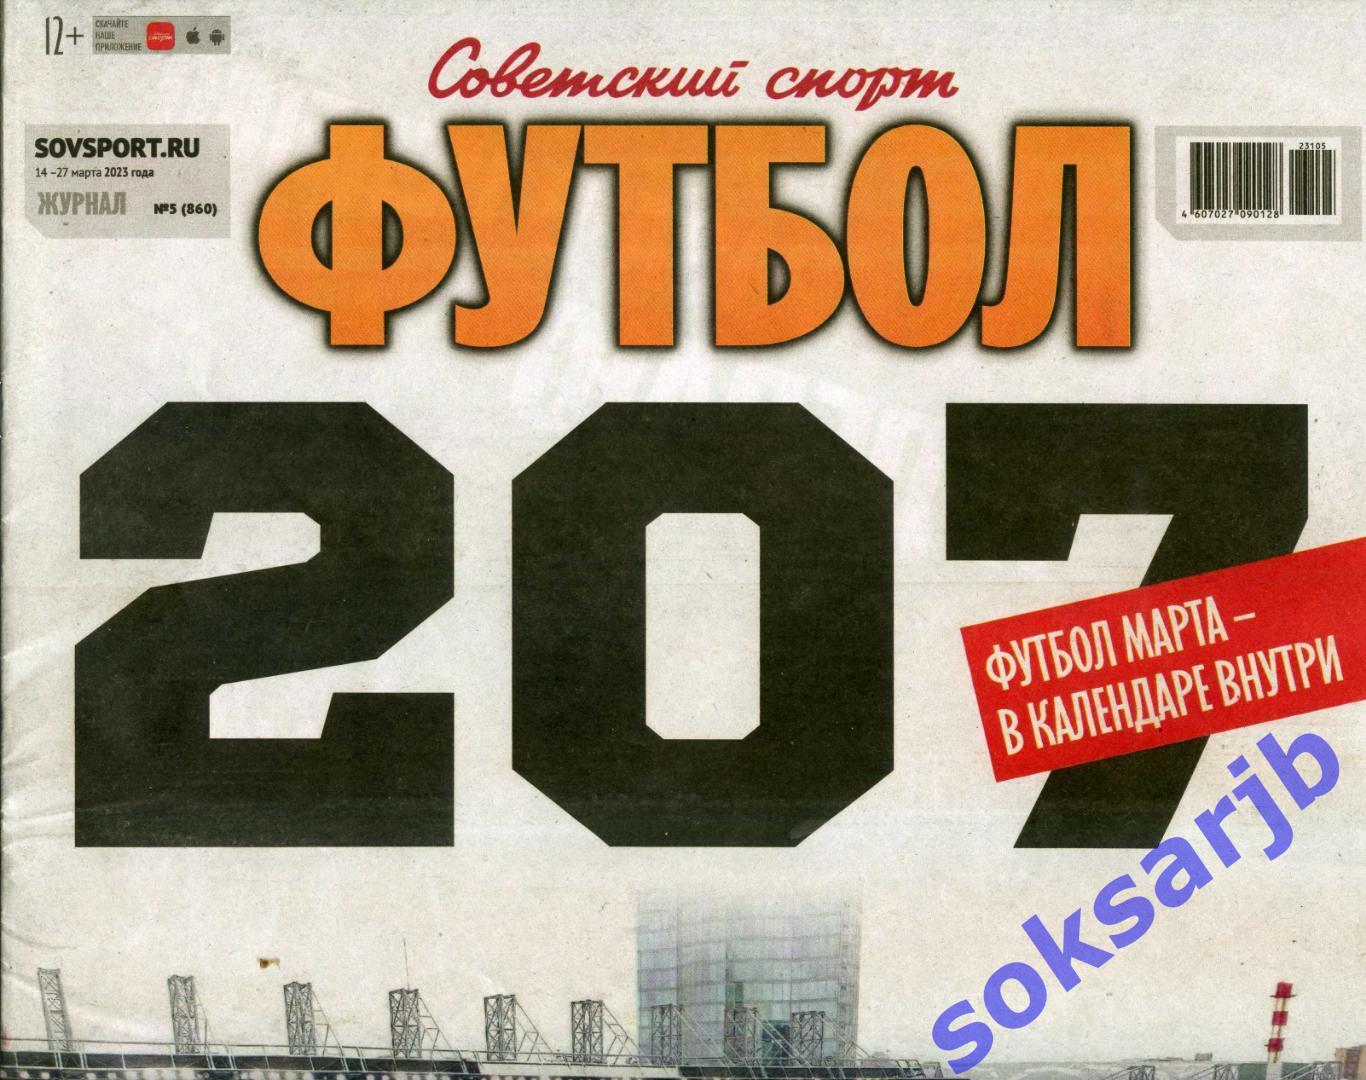 2023. Еженедельник Советский спорт - Футбол №5 (860).